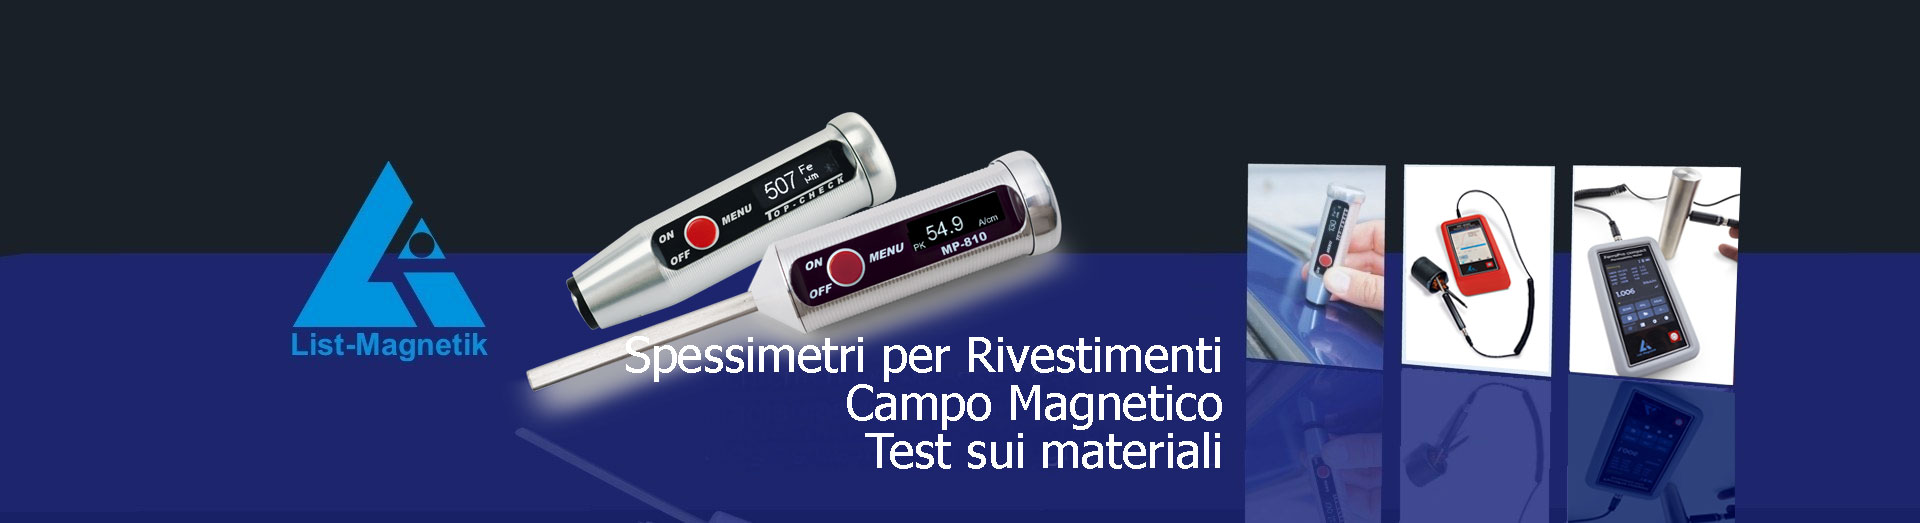 List Magnetik GmbH
Spessimetri per rivestimenti
Misuratoni di campo magnetico
Misuratori della Permeabilità Magnetica
Magnetizzasione / Smagnetizzione